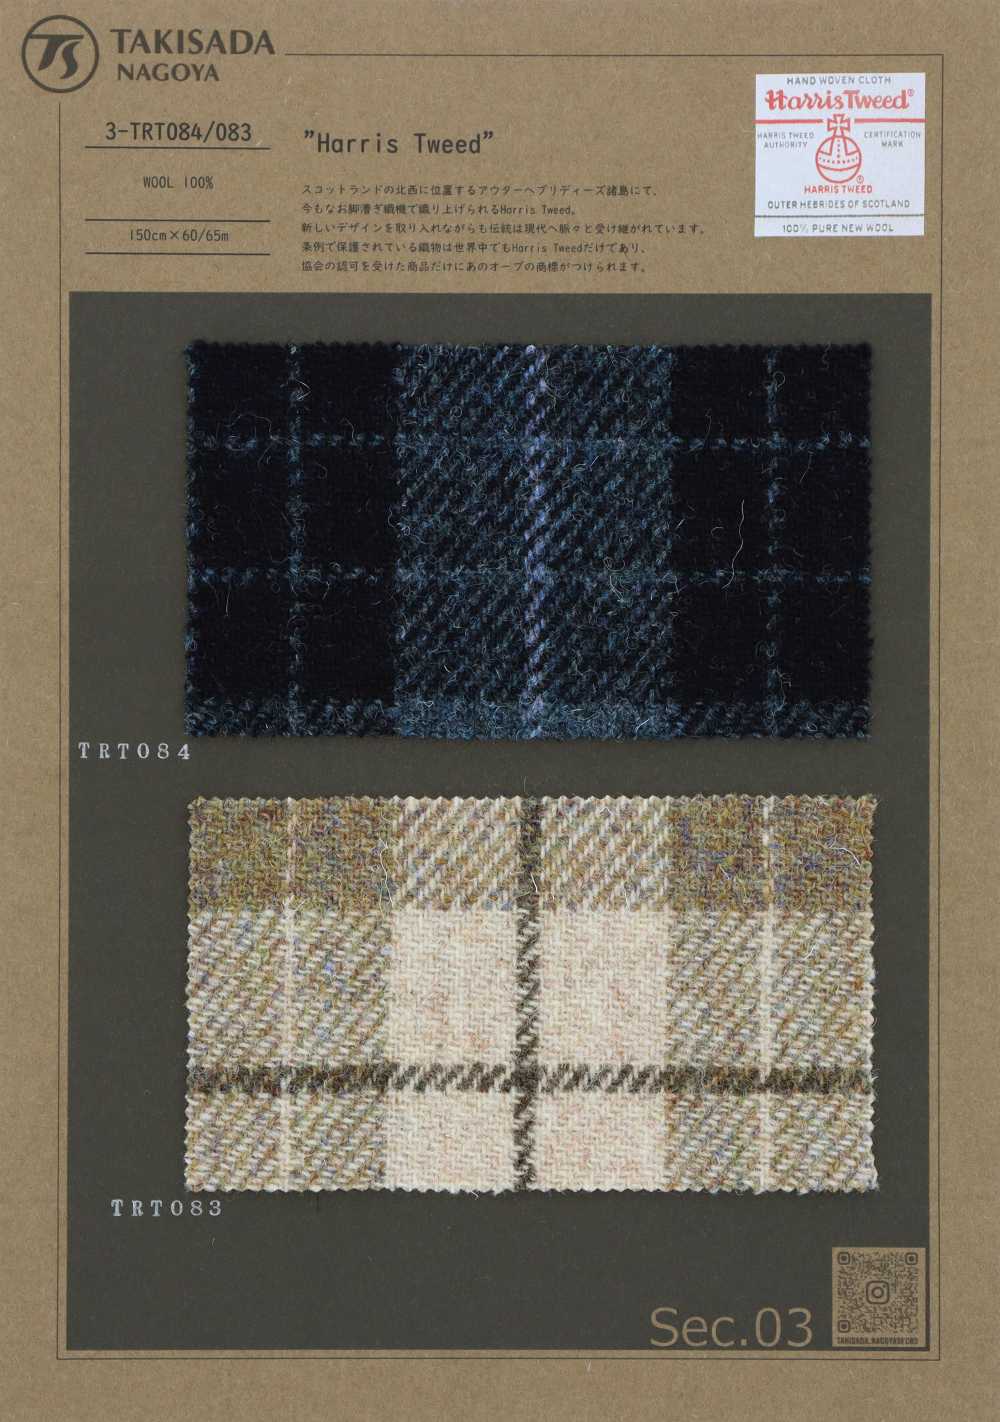 3-TRT083 HARRIS Harris Tweed Tartan Check[Textile / Fabric] Takisada Nagoya